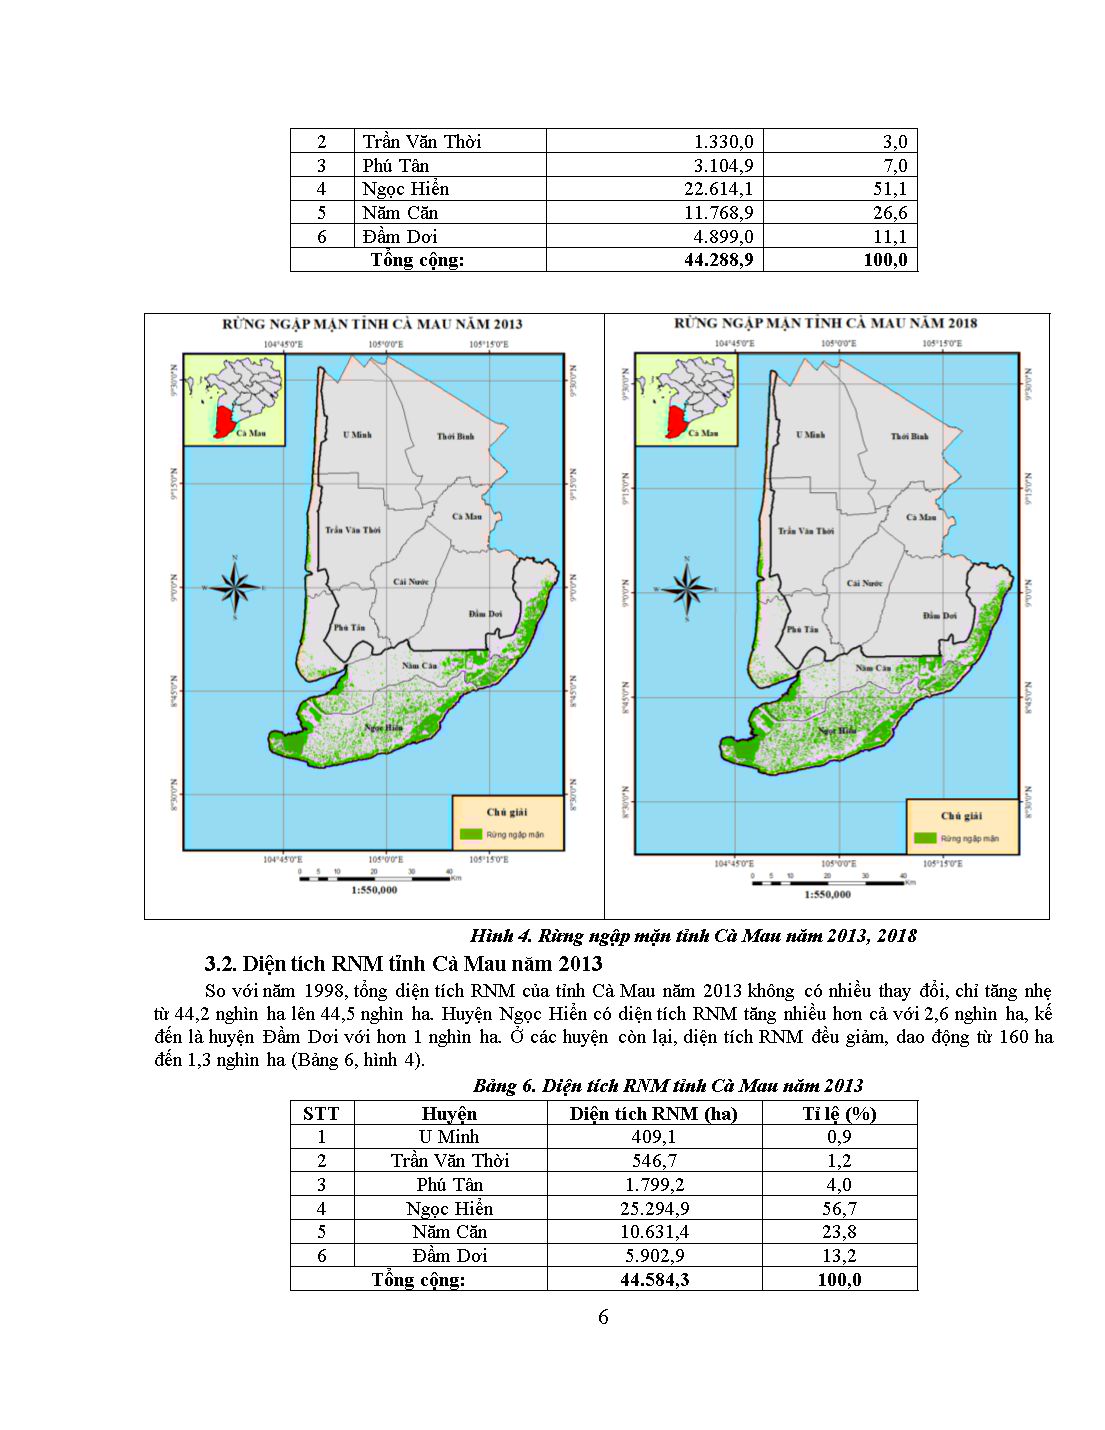 Đánh giá biến động rừng ngập mặn tỉnh Cà Mau trên cơ sở ảnh vệ tinh giai đoạn 1988-2018 trang 6